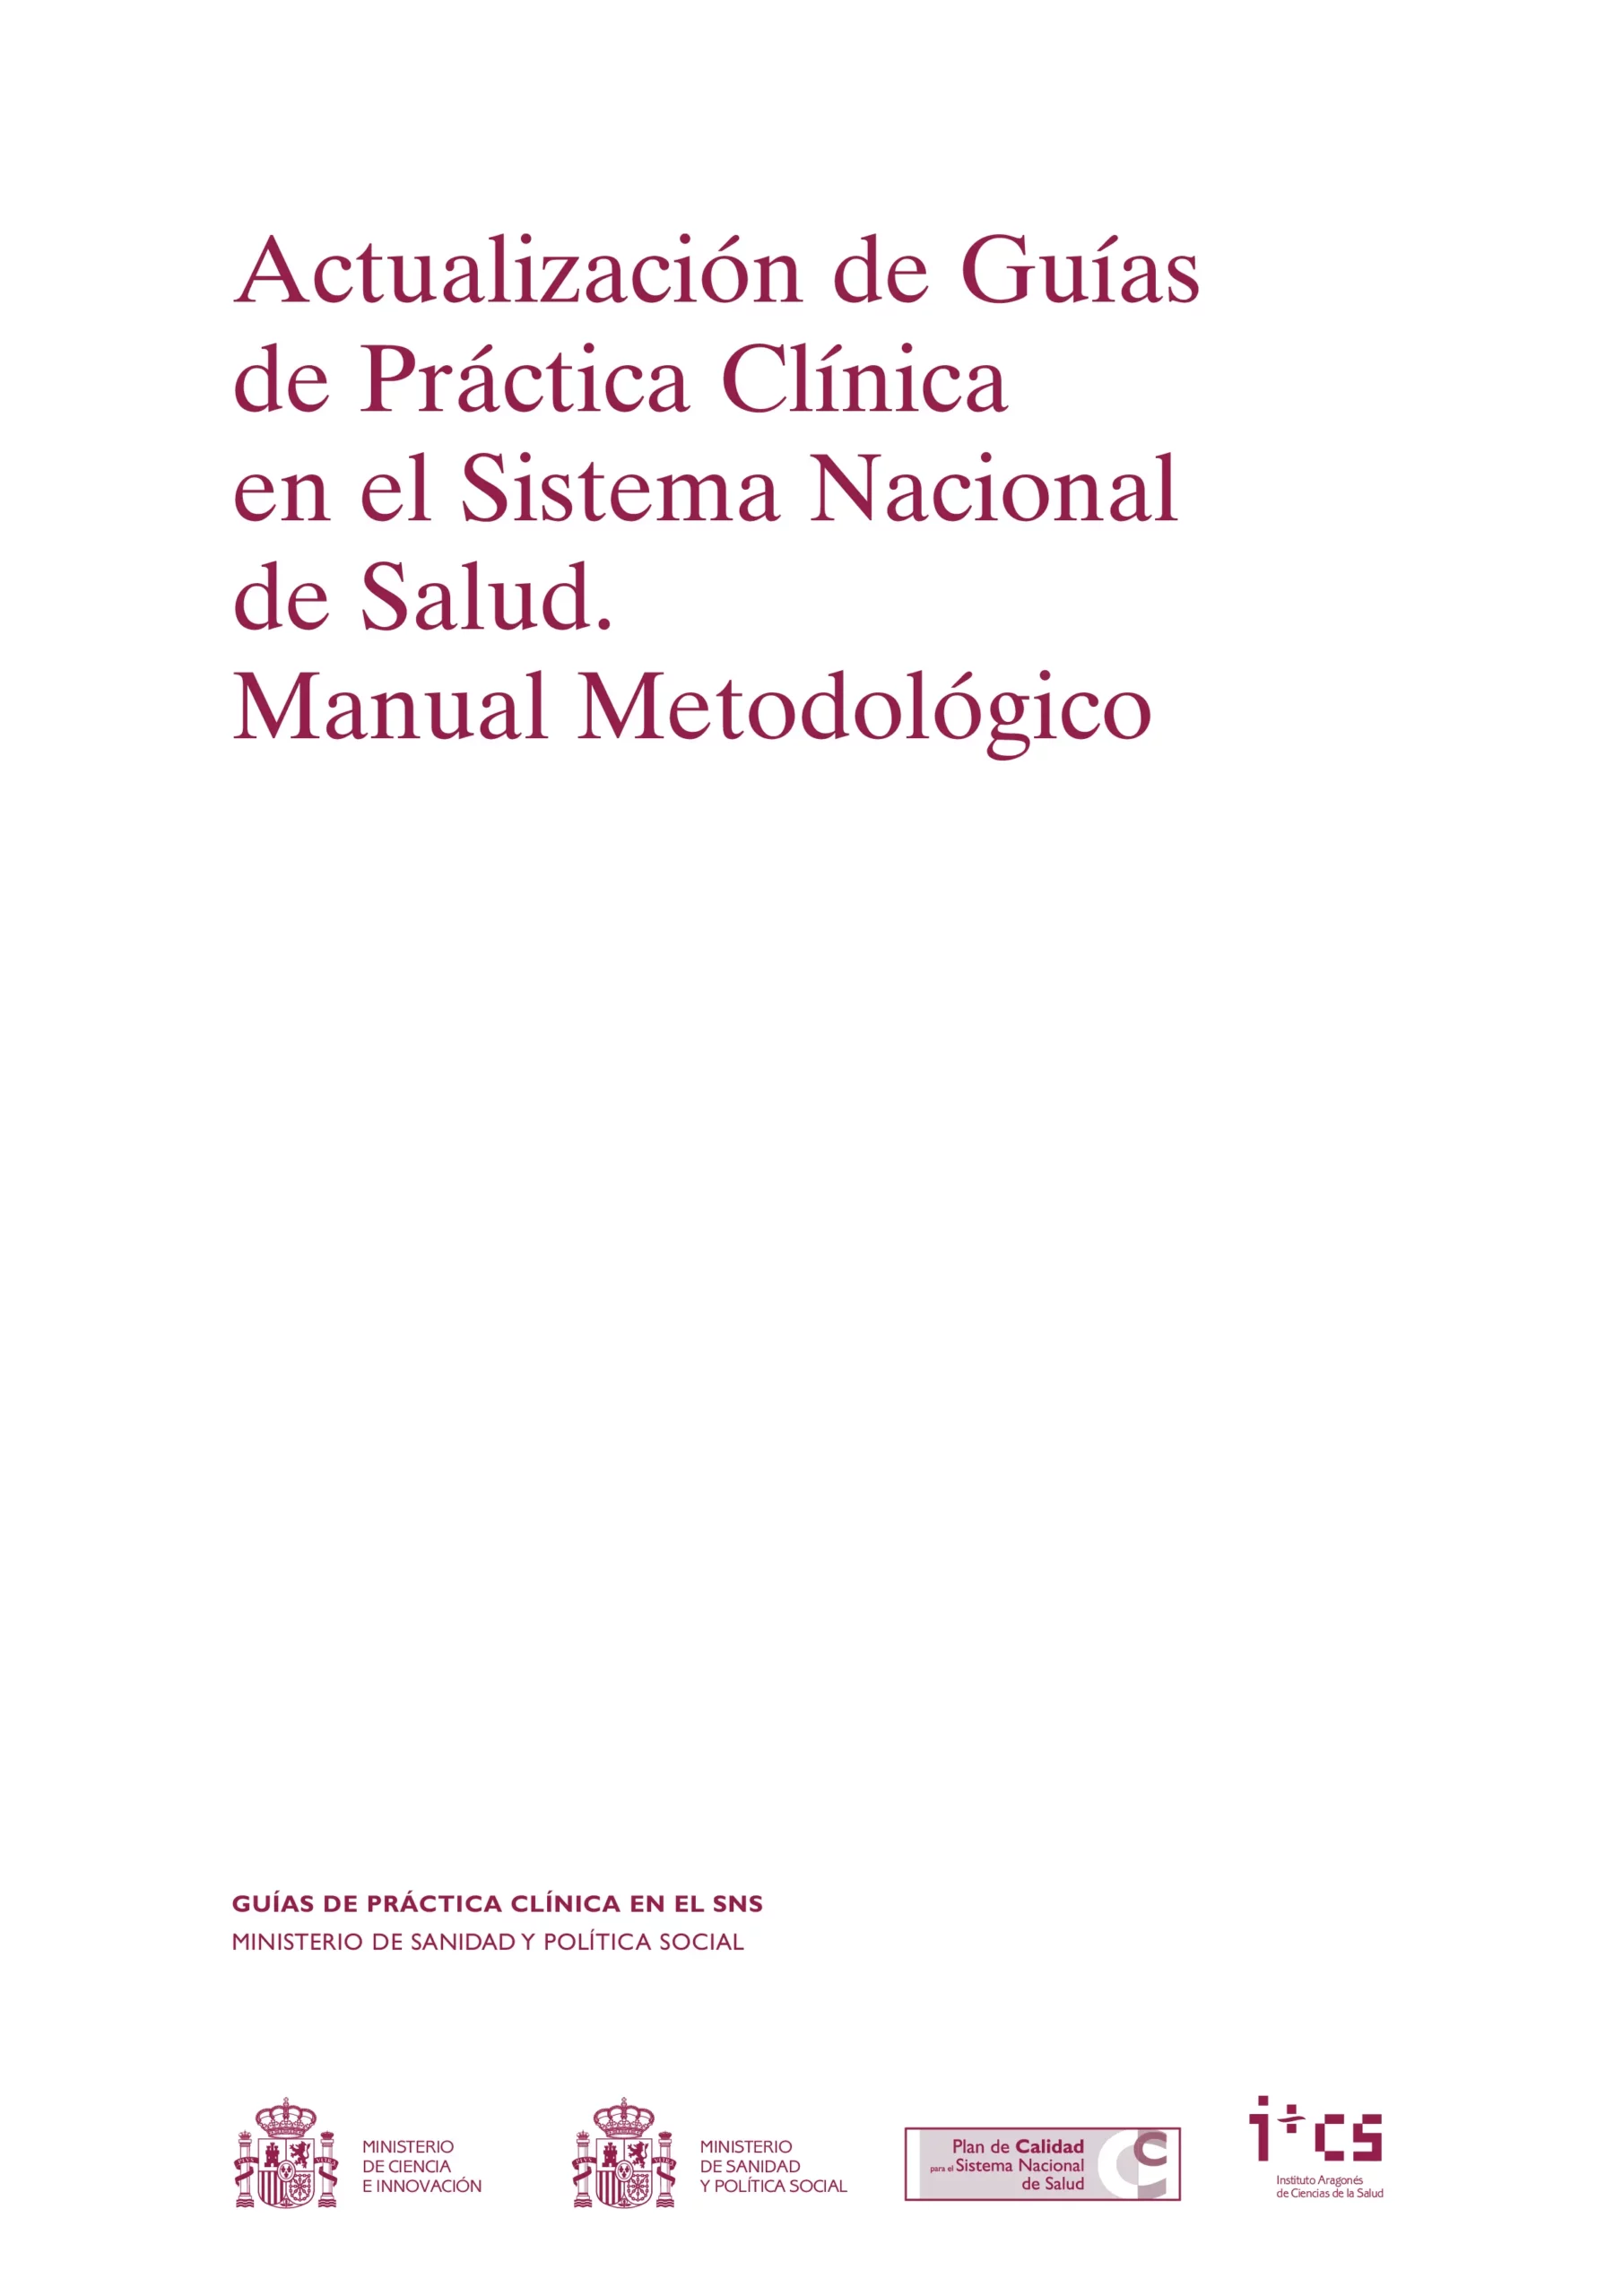 Actualizacion de guias de practica clinica en el sistema nacional